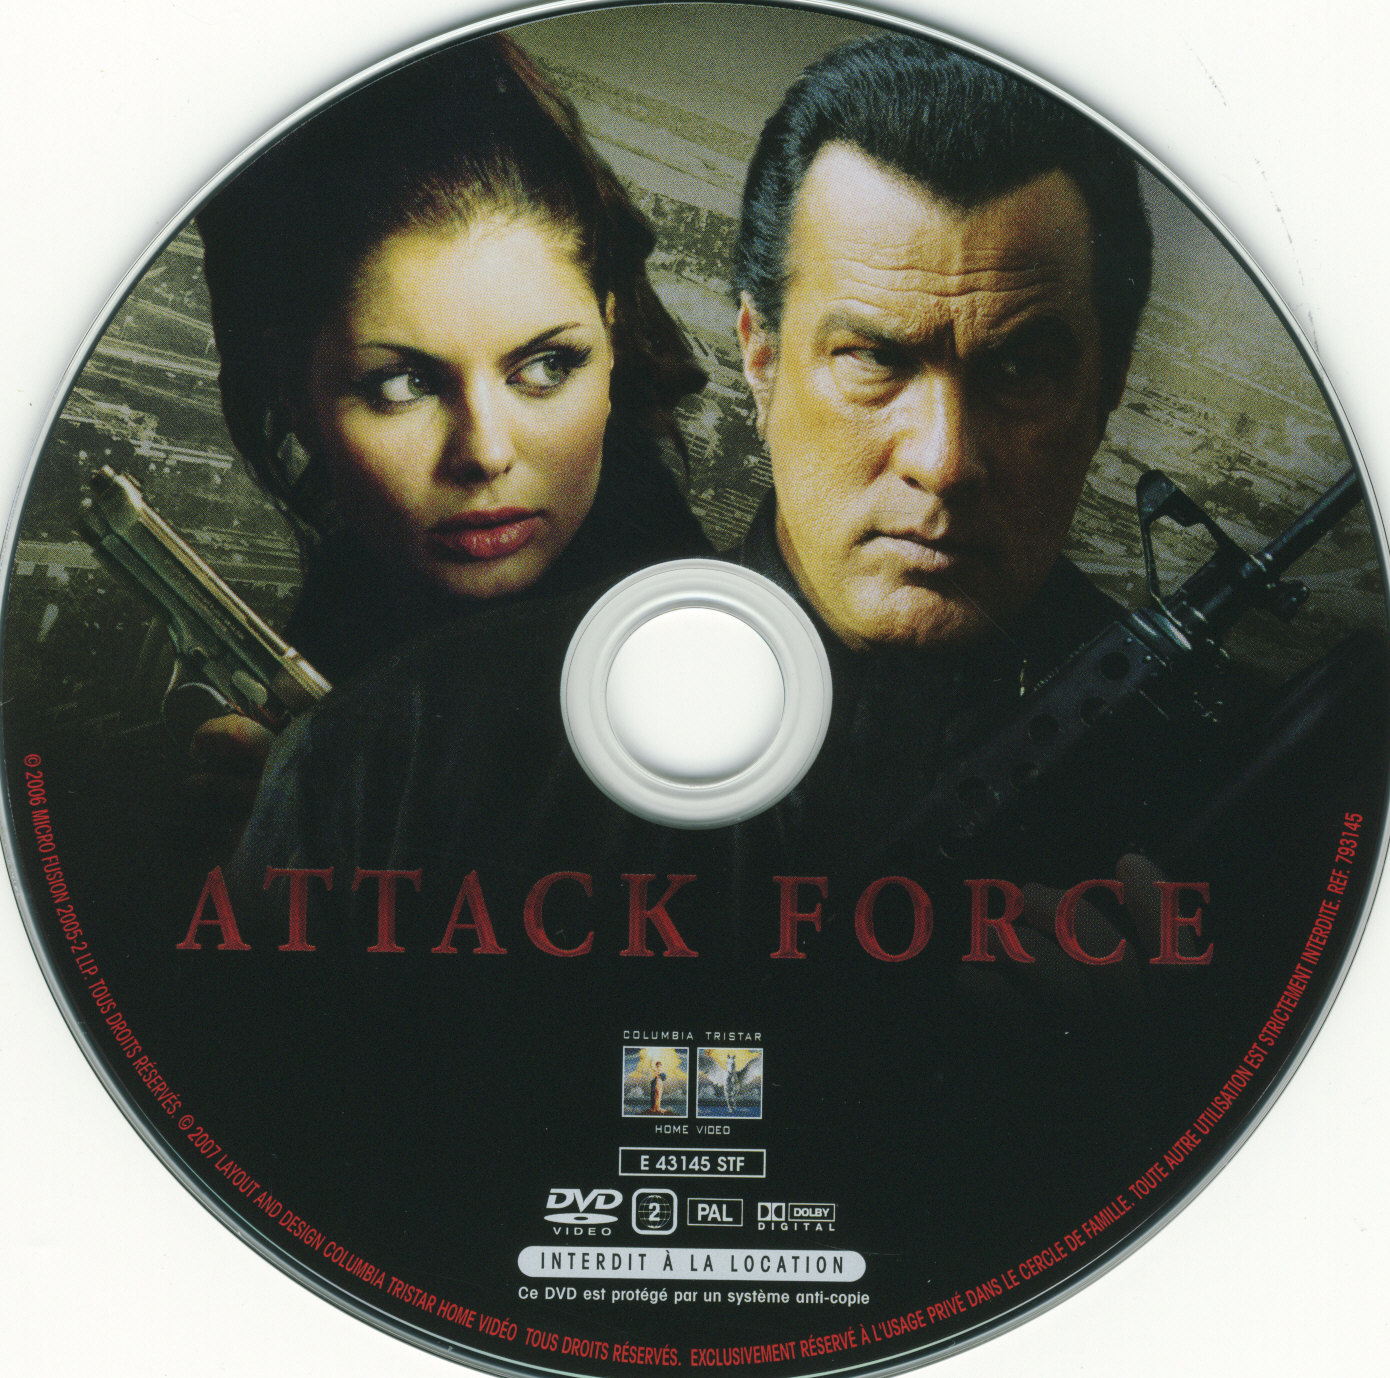 Attack force v2